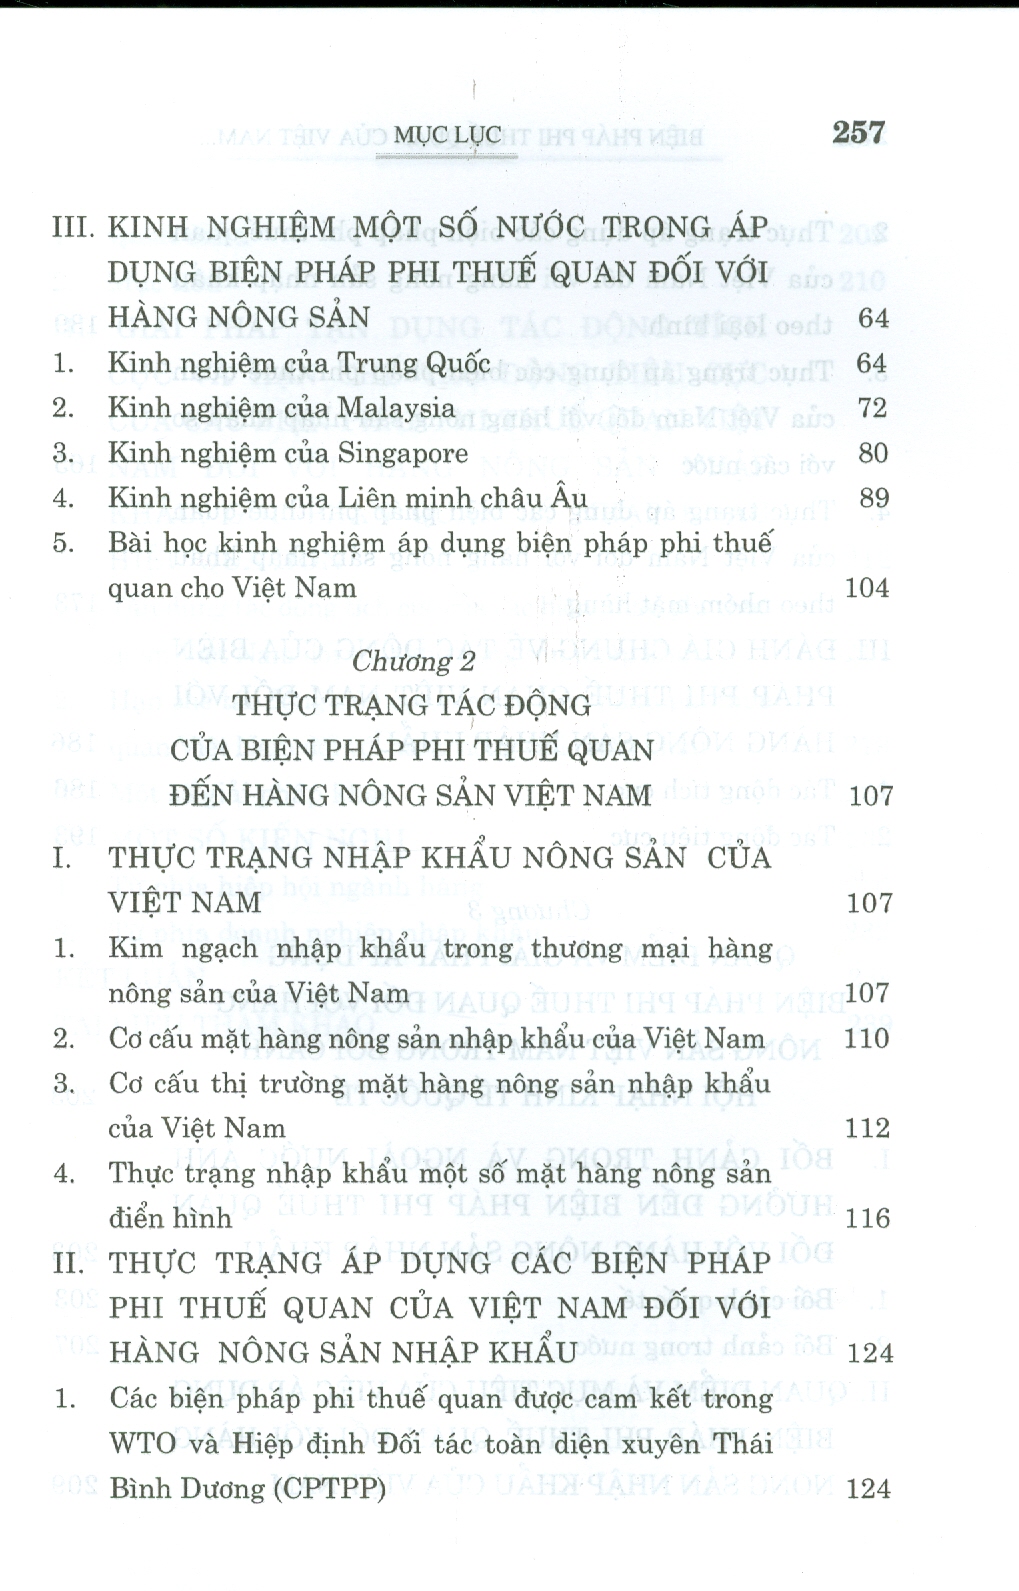 Biện Pháp Phi Thuế Quan Của Việt Nam Đối Với Hàng Nông Sản Nhập Khẩu (Sách chuyên khảo)